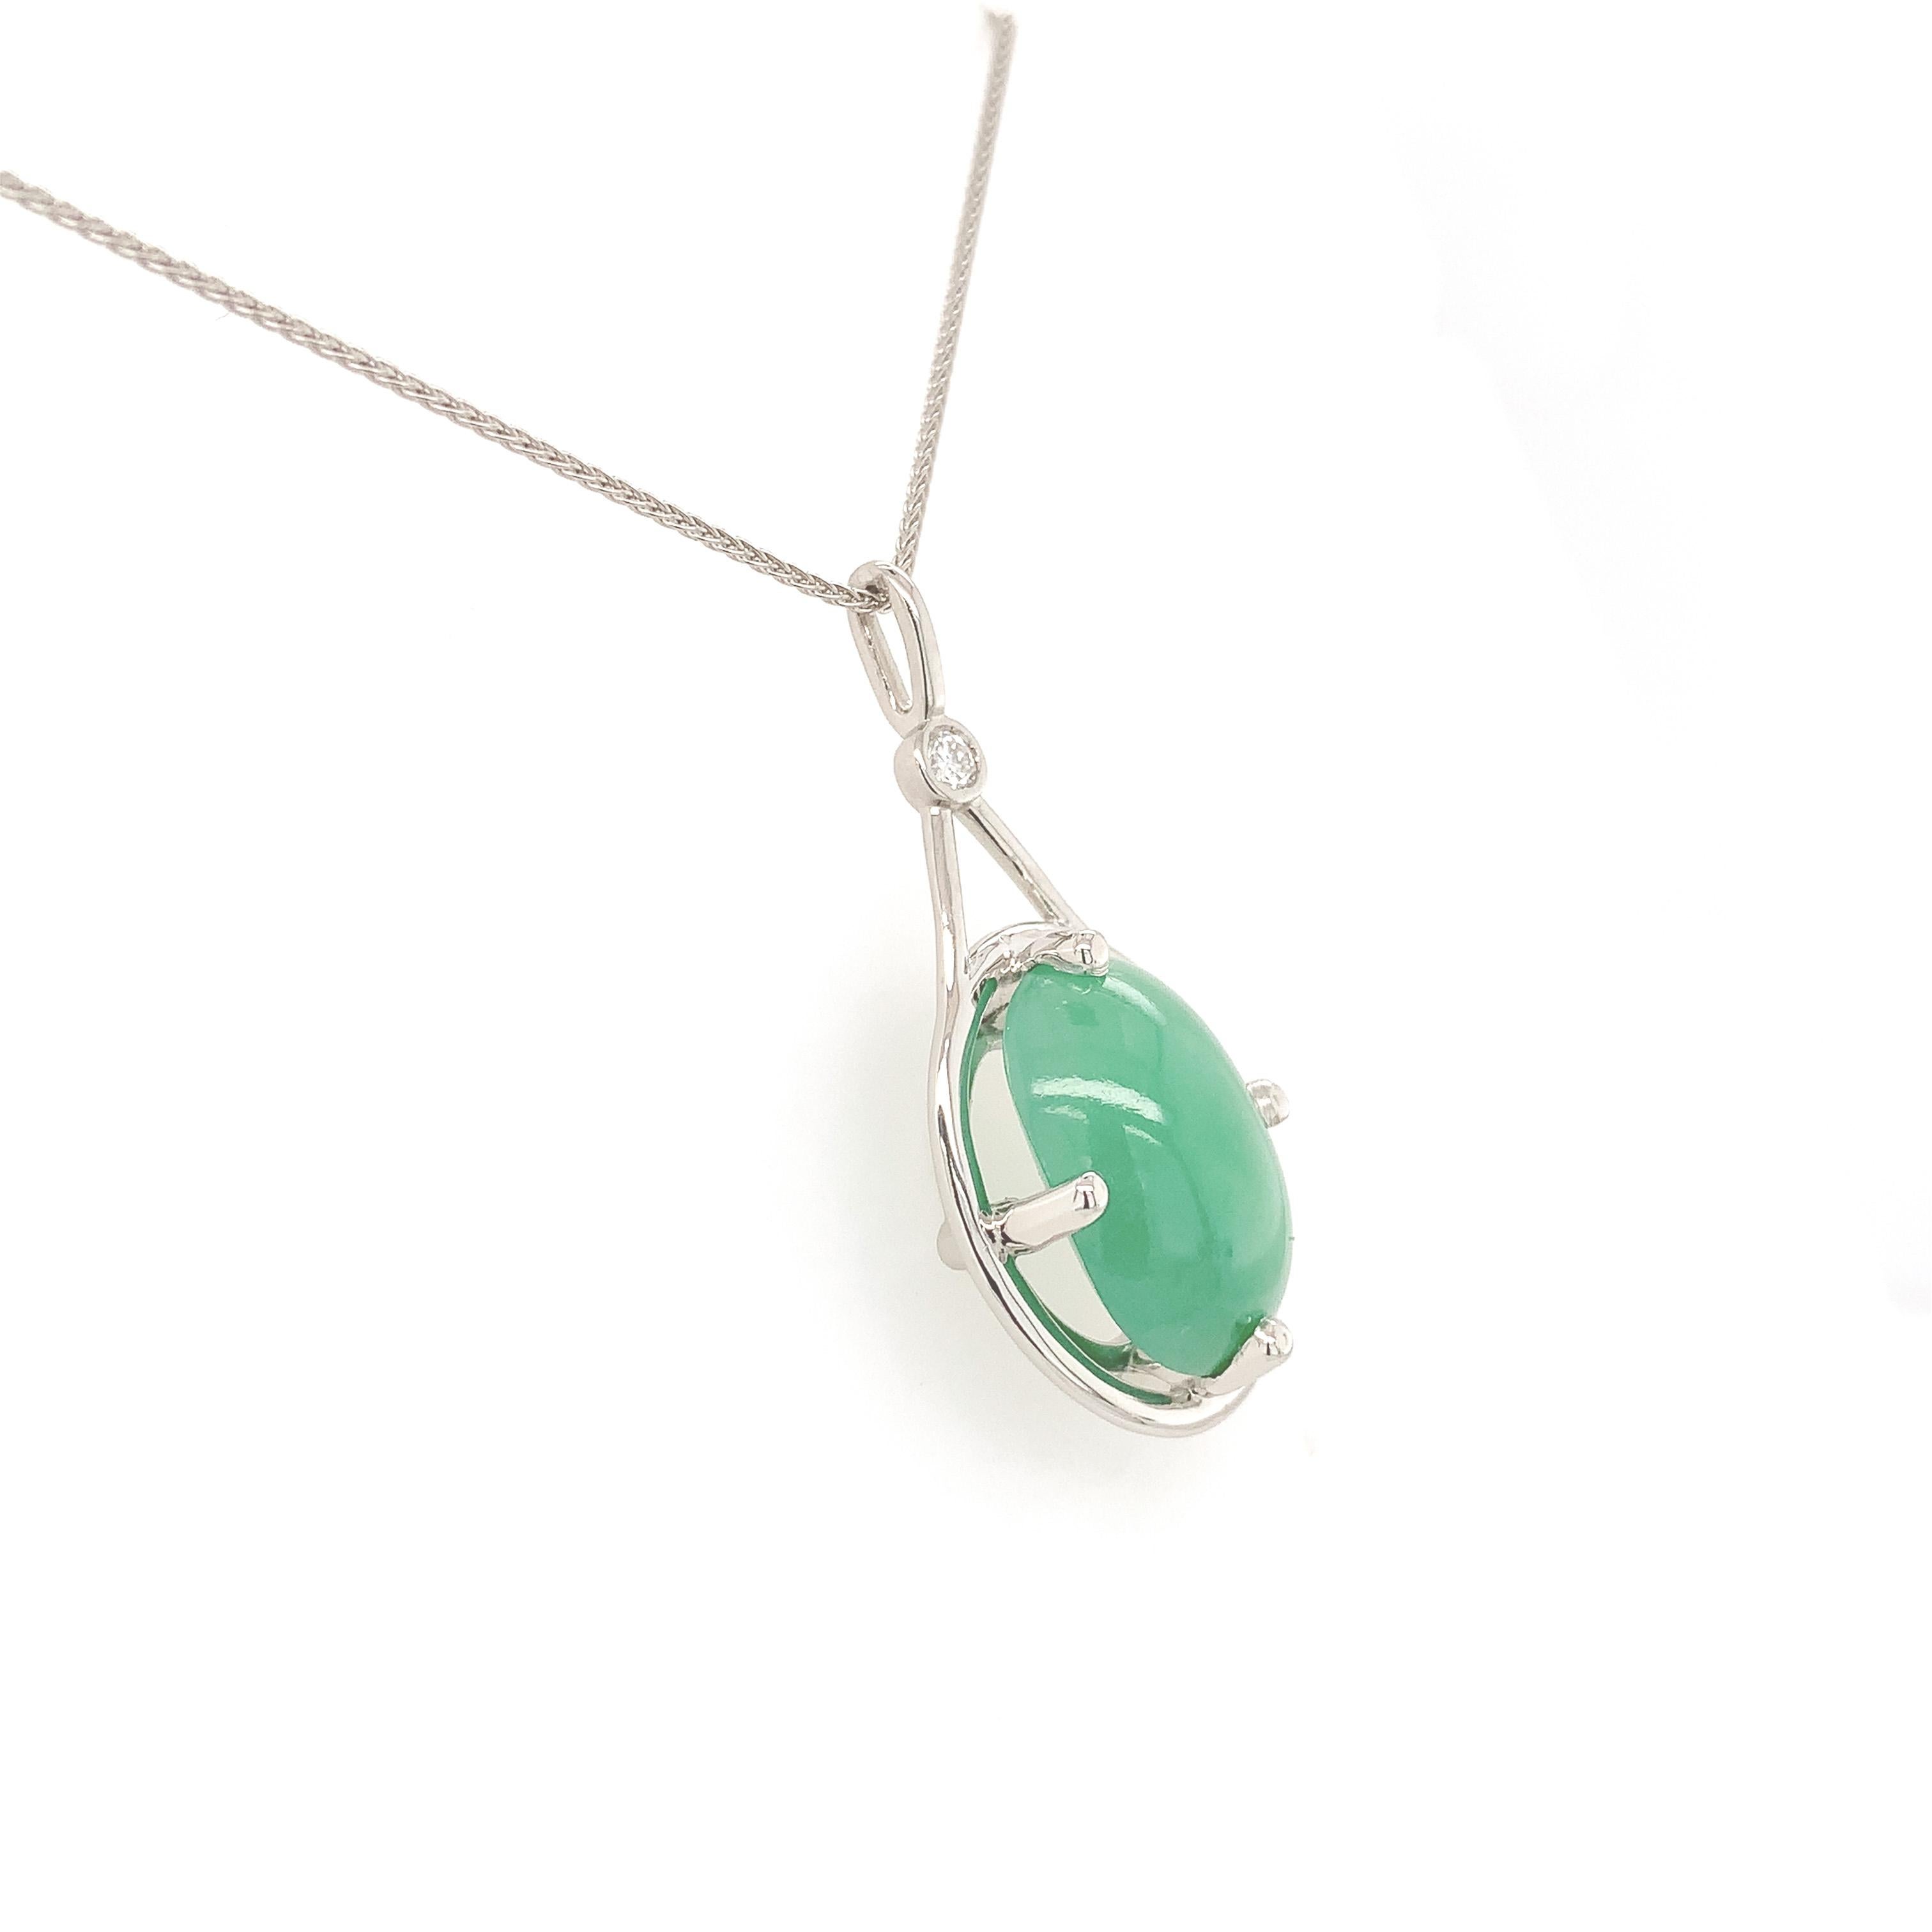 Pendentif en platine orné d'un grand cabochon ovale de jade vert pesant 9,55 carats. Le jade a un rapport GIA #5234070884 indiquant jadéite naturelle grade A, non teintée. Le jade mesure 15,8 mm x 11,04 mm x 6,83 mm et est translucide avec une